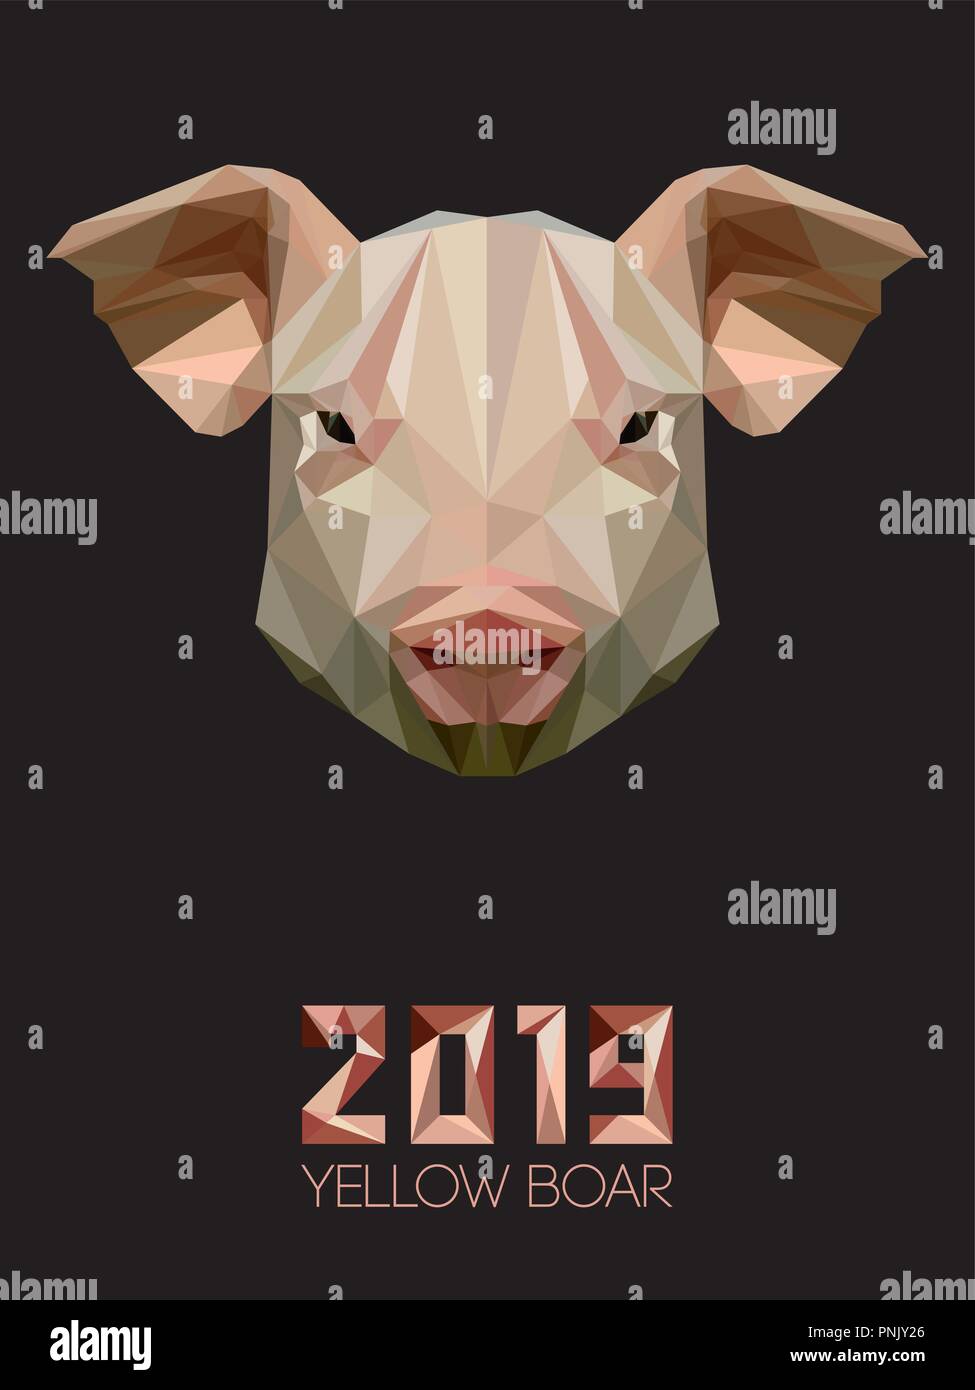 Schwein ist Symbol des Neuen 2019 Jahr, entsprechend der chinesischen Kalender Jahr der Gelben irdenen Eber. Zunge von einem Hausschwein in Polygonen Stil. Bauernhof Haustiere Stock Vektor